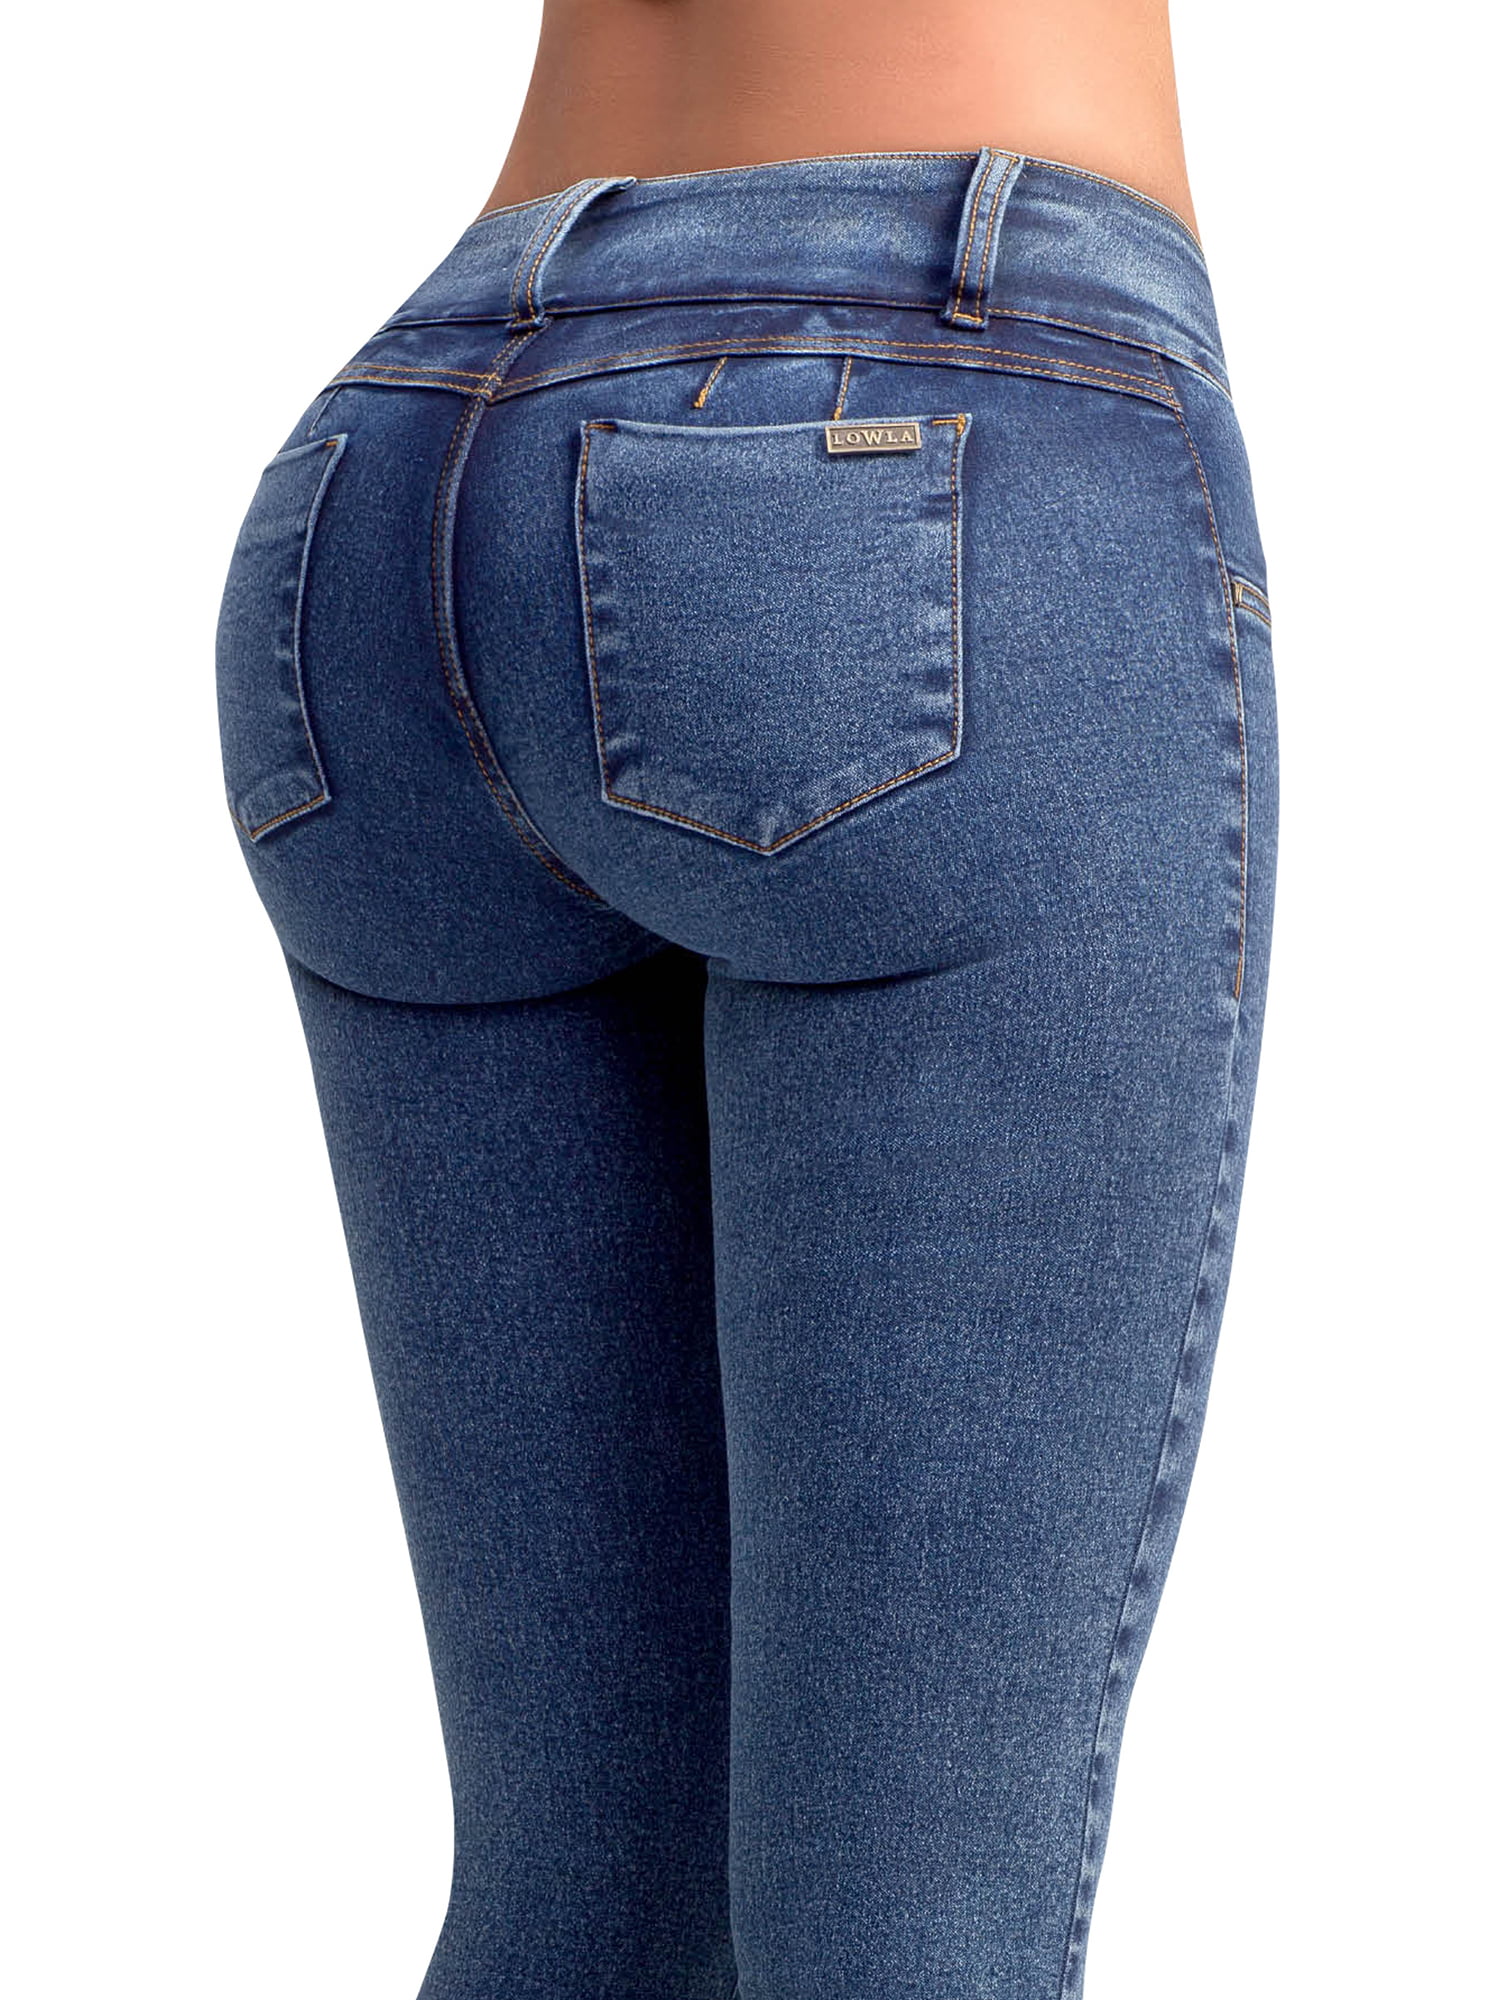 best butt in jeans